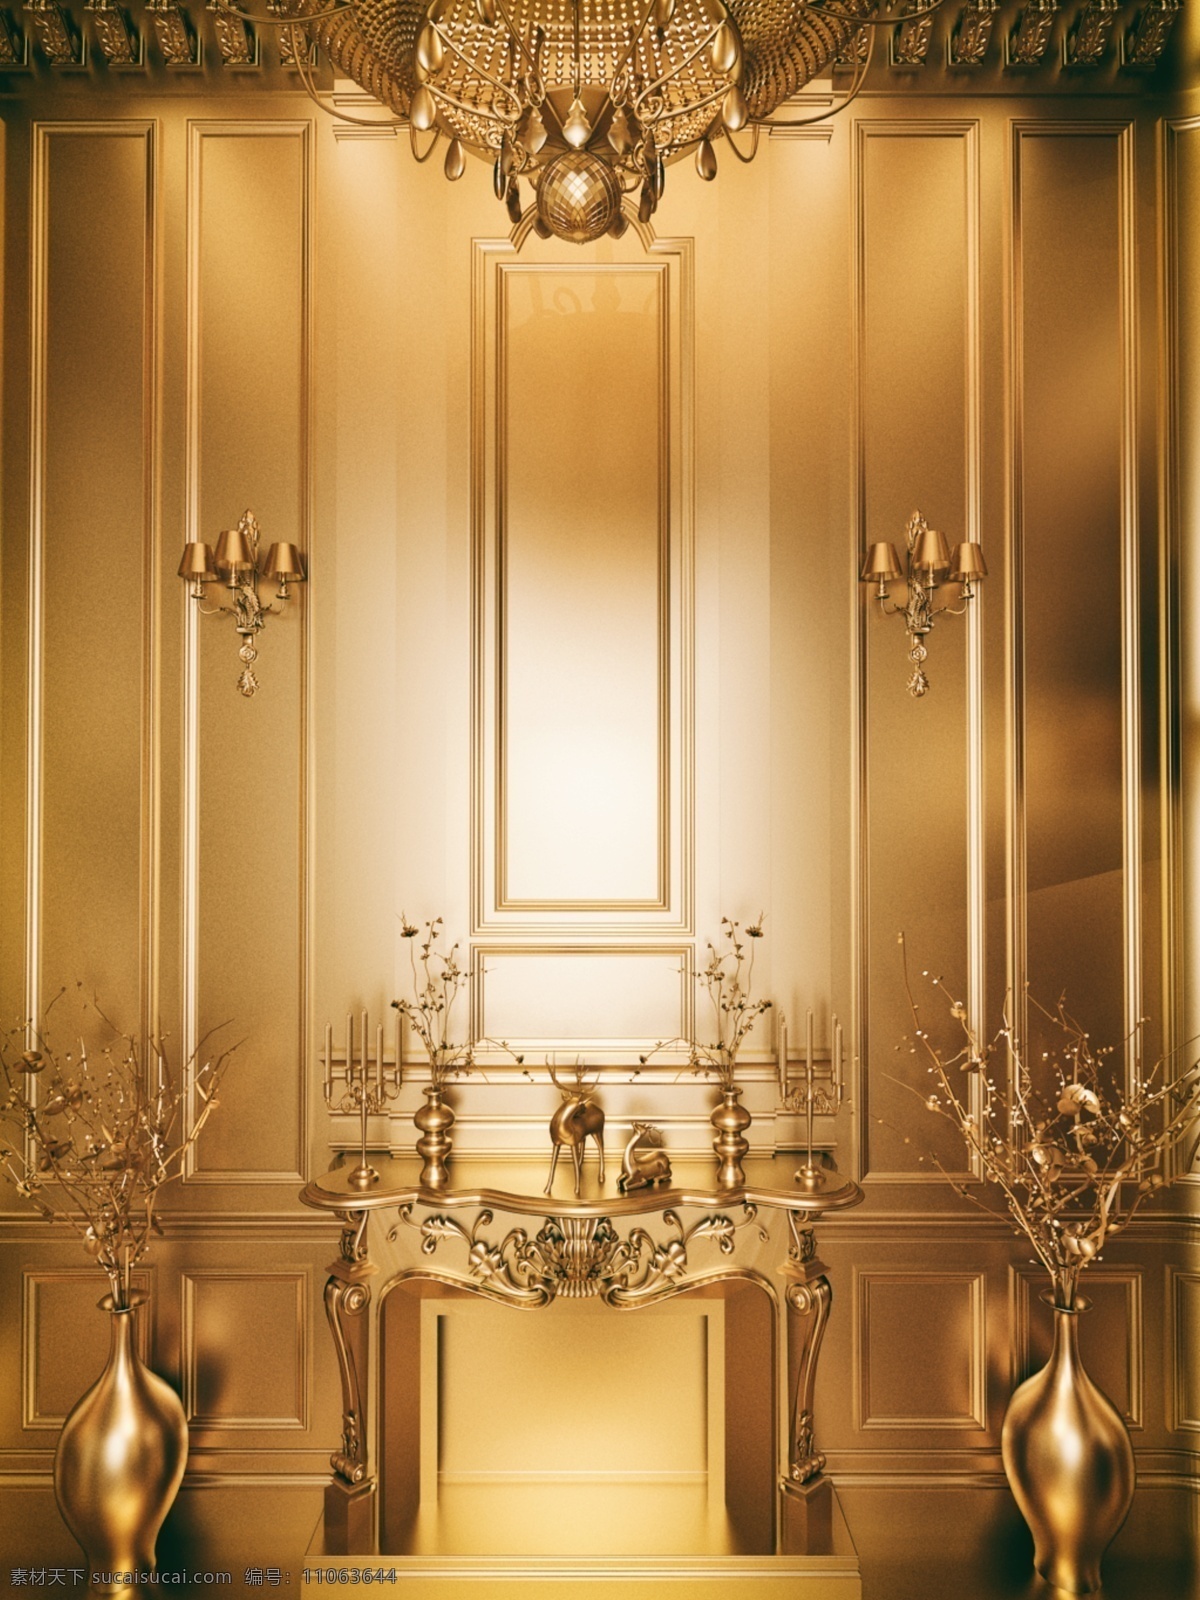 金色 空间 欧式 唯美 壁炉 3d 金属 质感 背景 金子 花纹 立体感 空间感 c4d